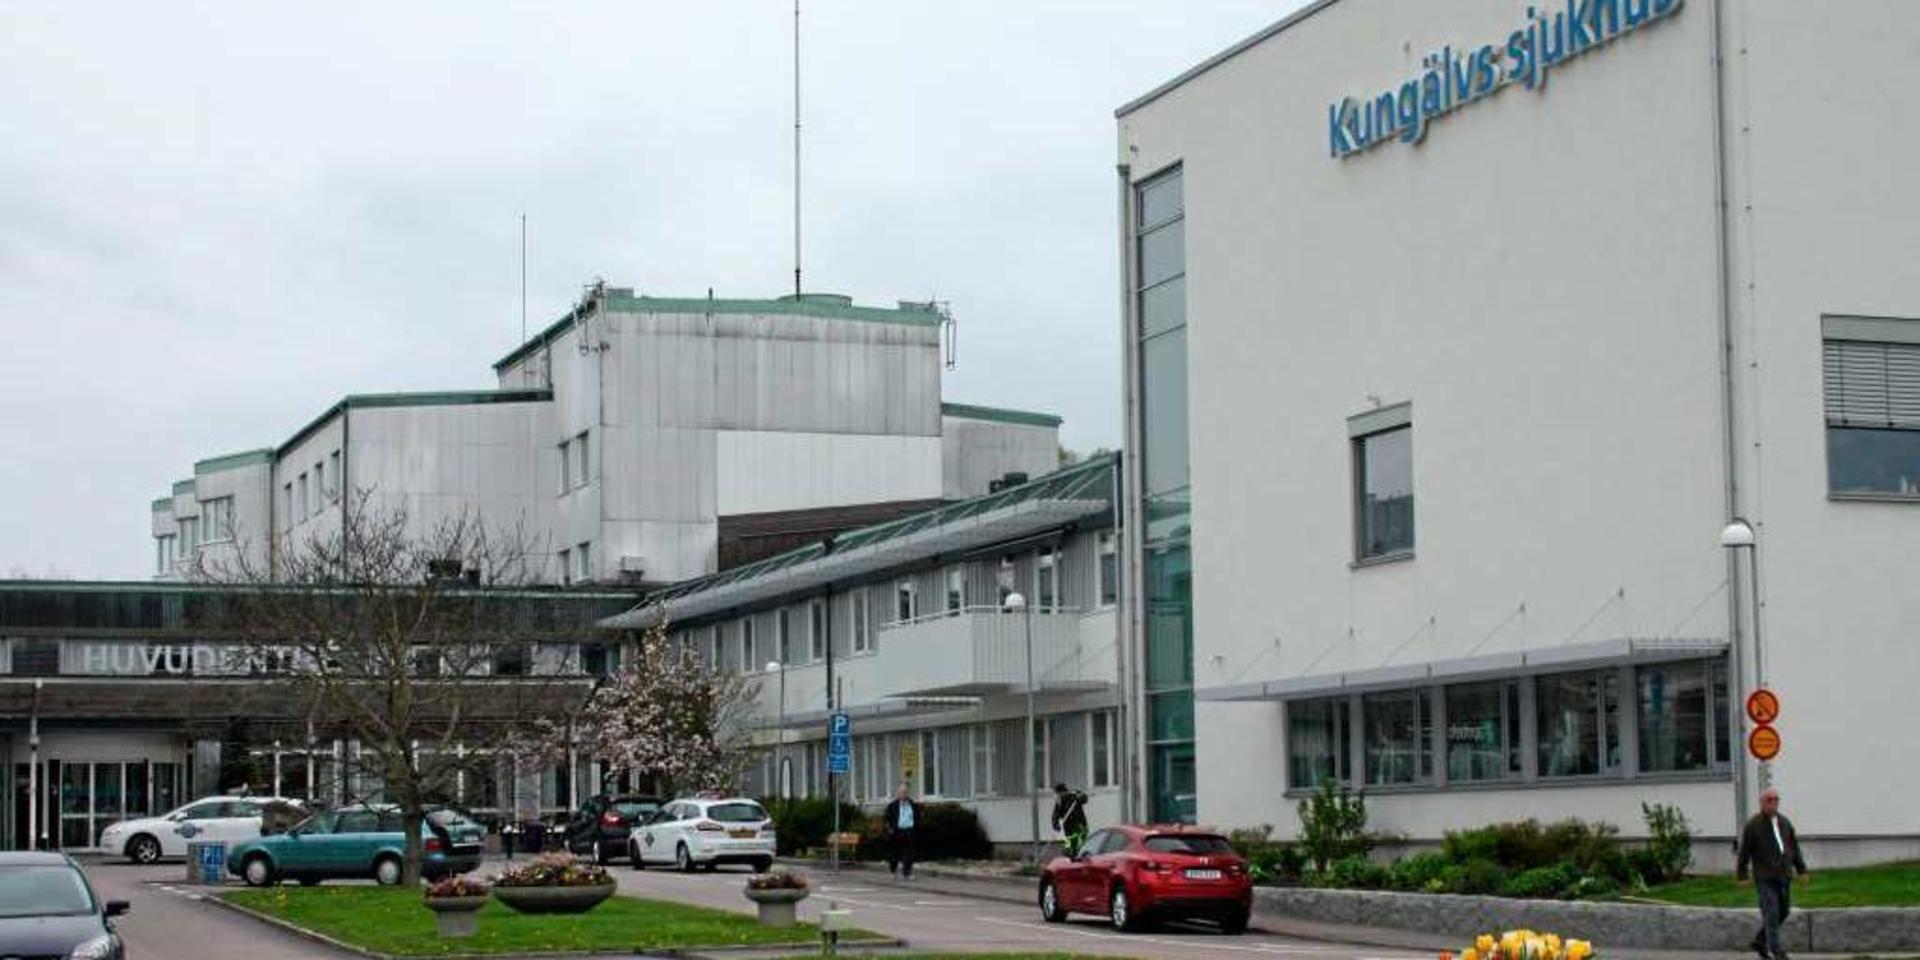 En person som vårdades på Kungälvs sjukhus bekräftades efter provtagning vara smittad av det nya coronaviruset.